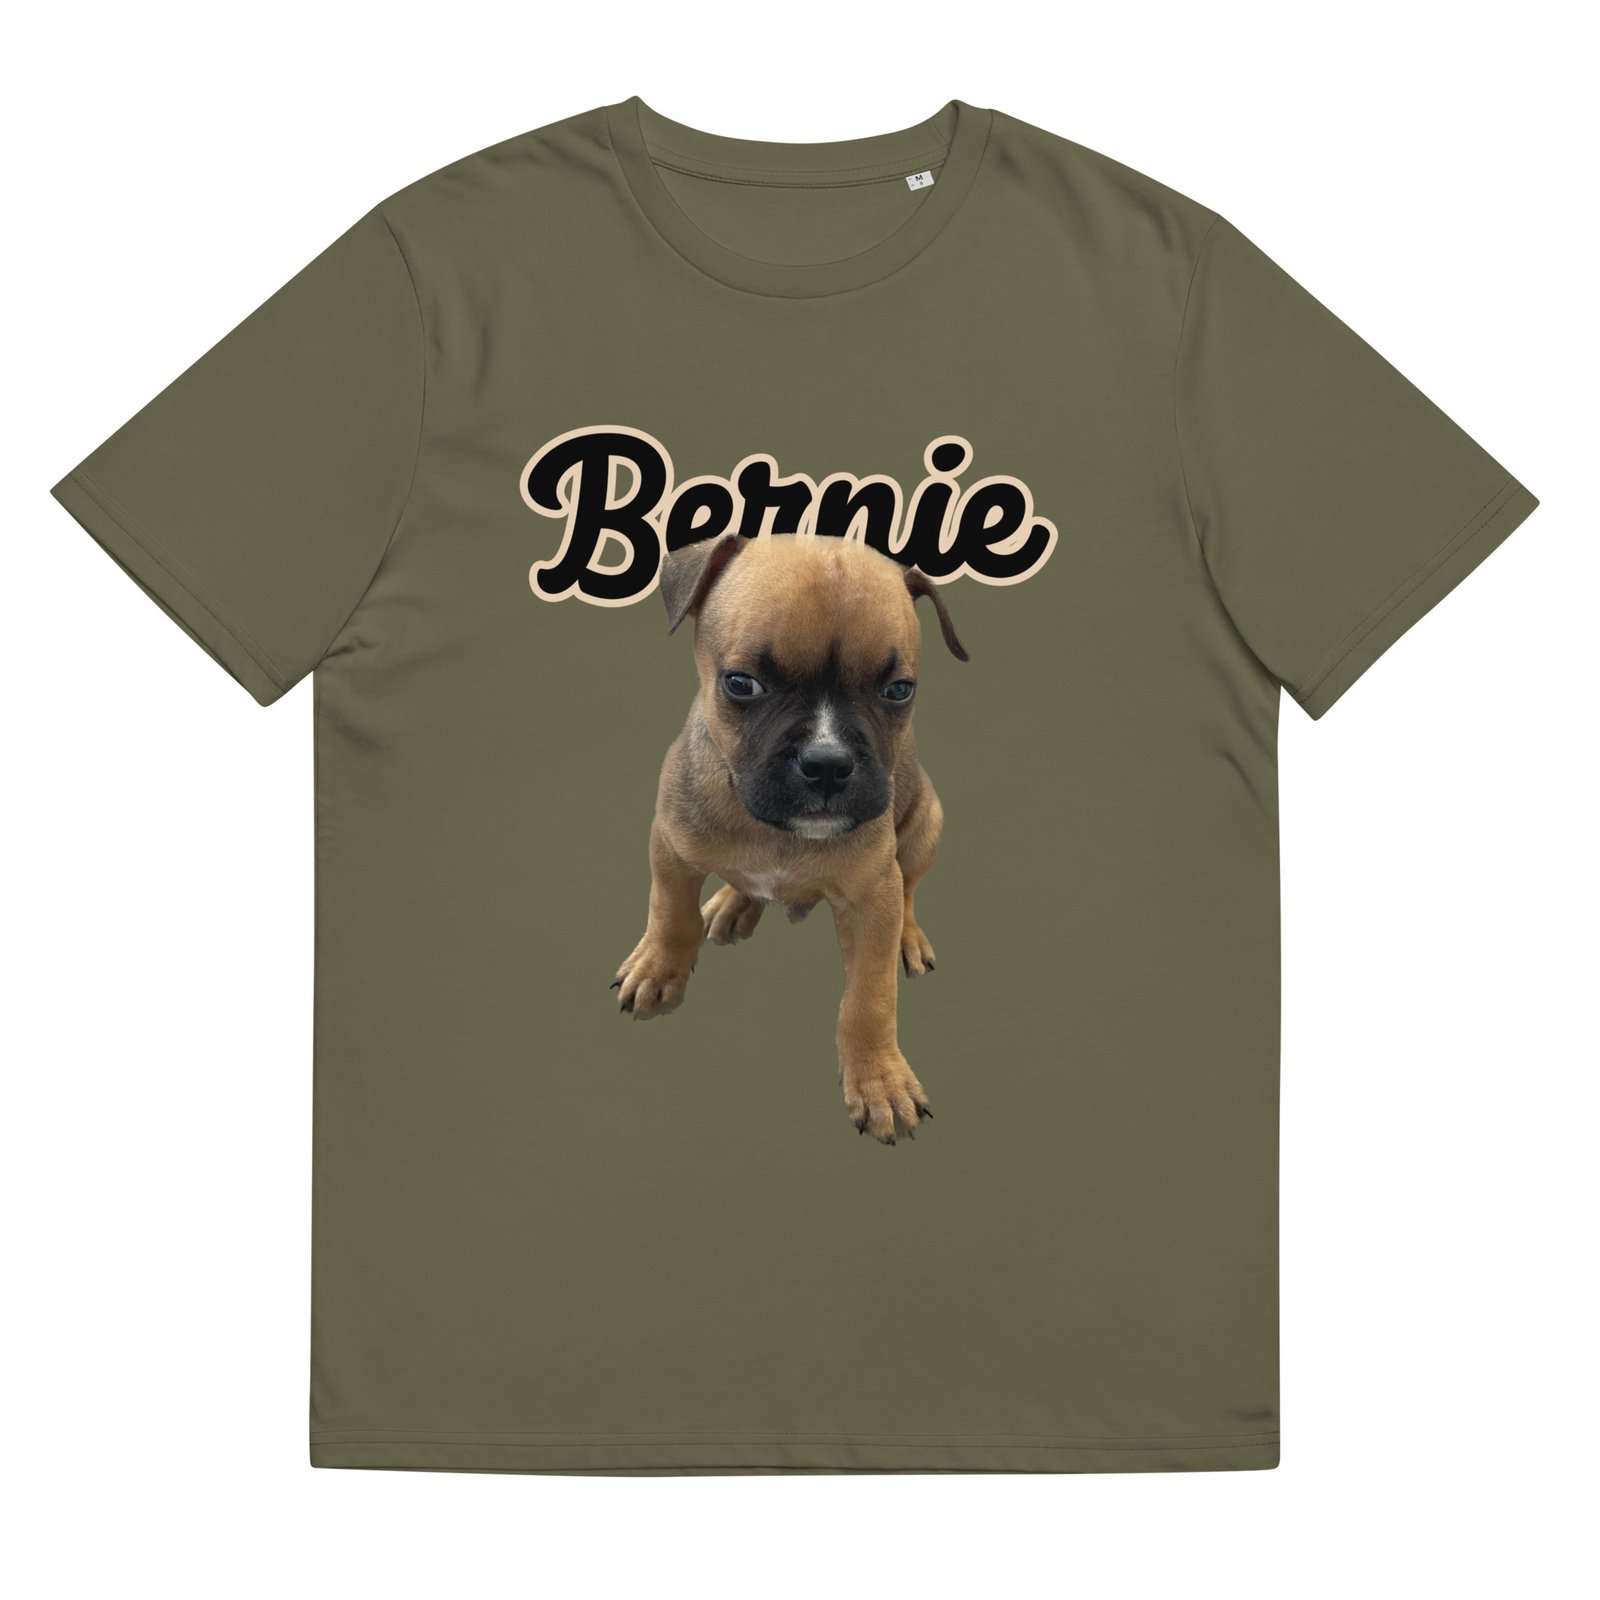 T-shirt personnalisé photo chien